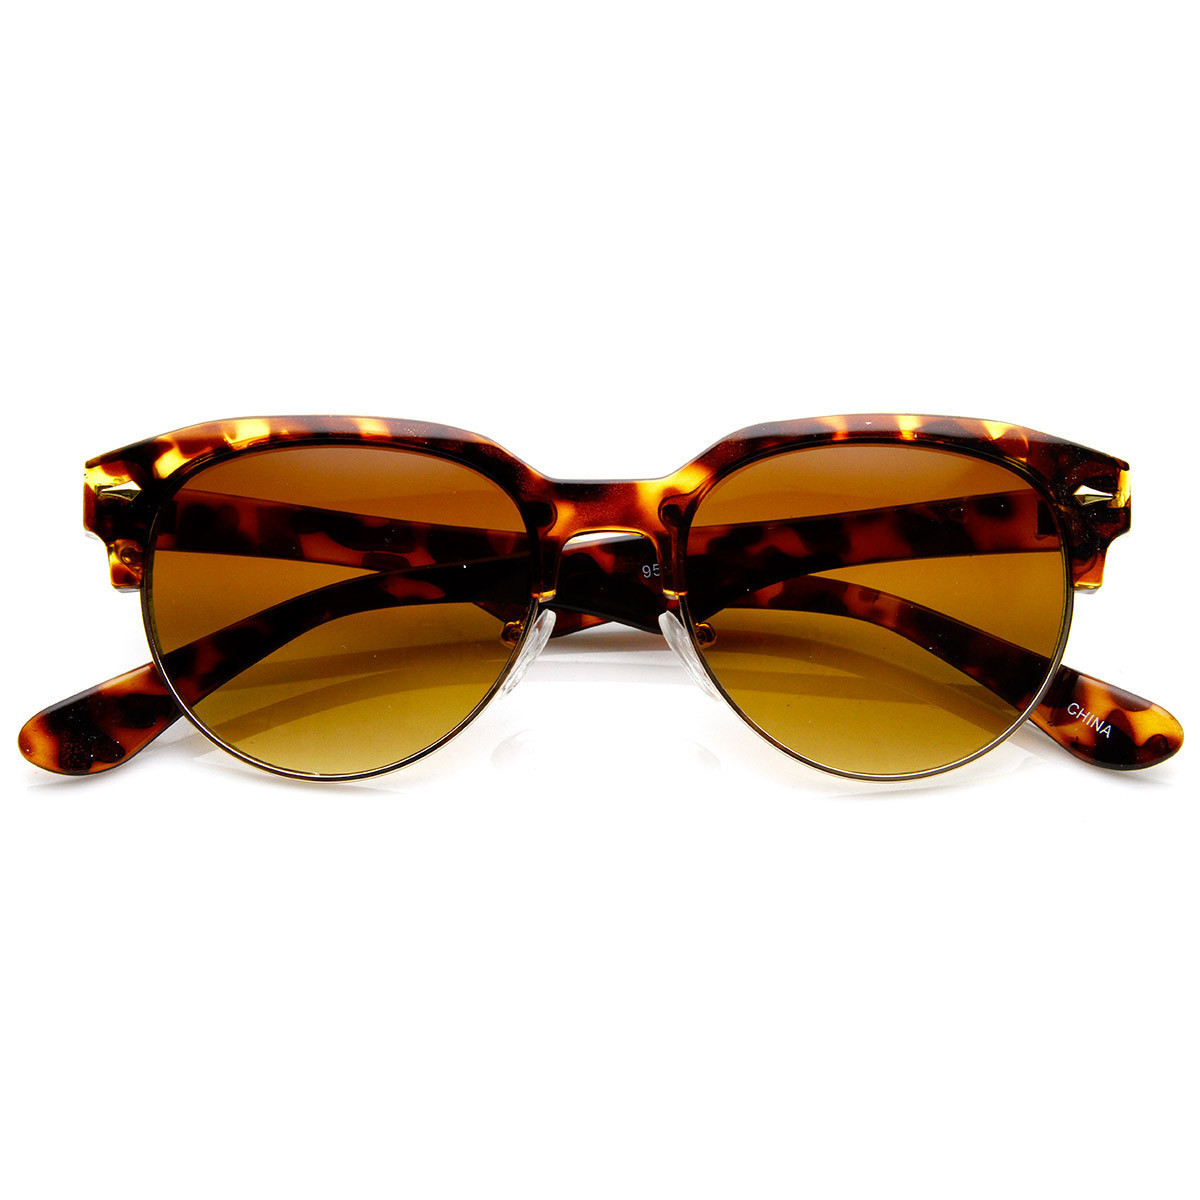 Classic Semi-Rimless Half Frame Retro Horned Rim Sunglasses - 8819 - Black Smoke